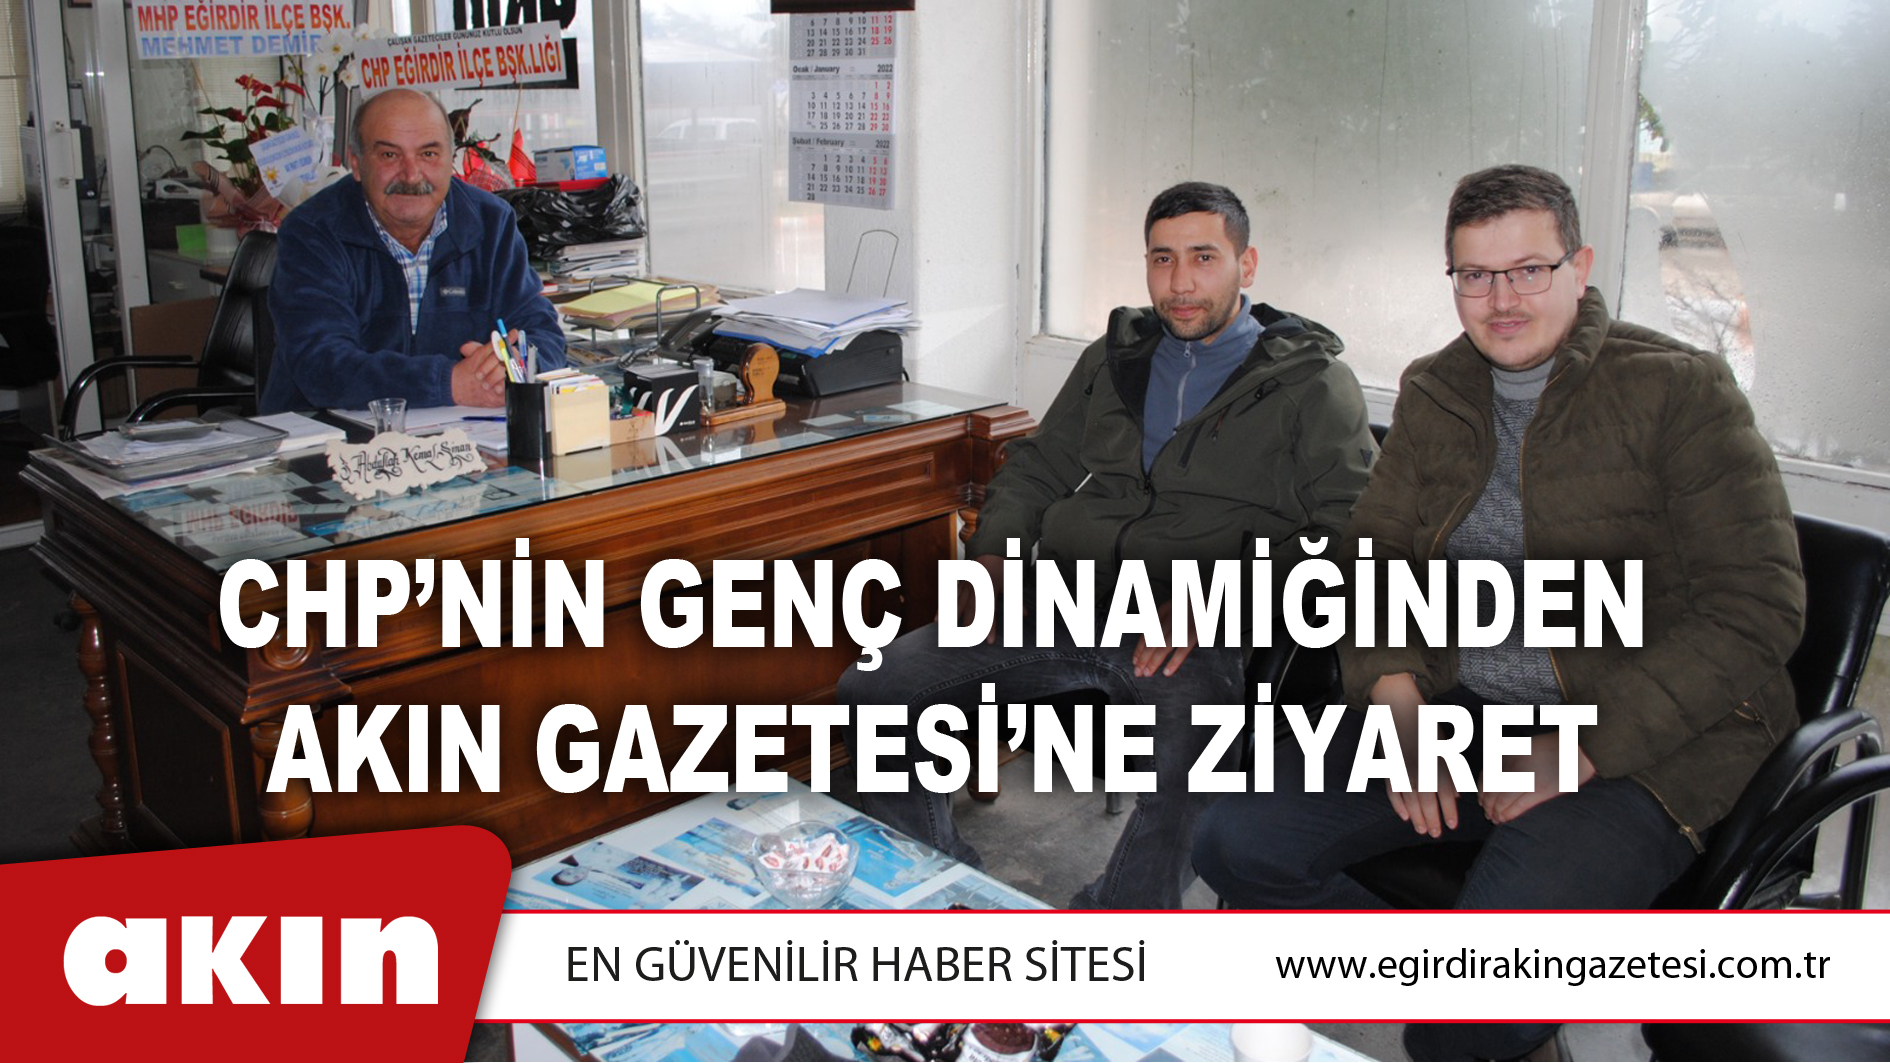 eğirdir haber,akın gazetesi,egirdir haberler,son dakika,CHP’nin Genç Dinamiğinden Akın Gazetesi’ne Ziyaret